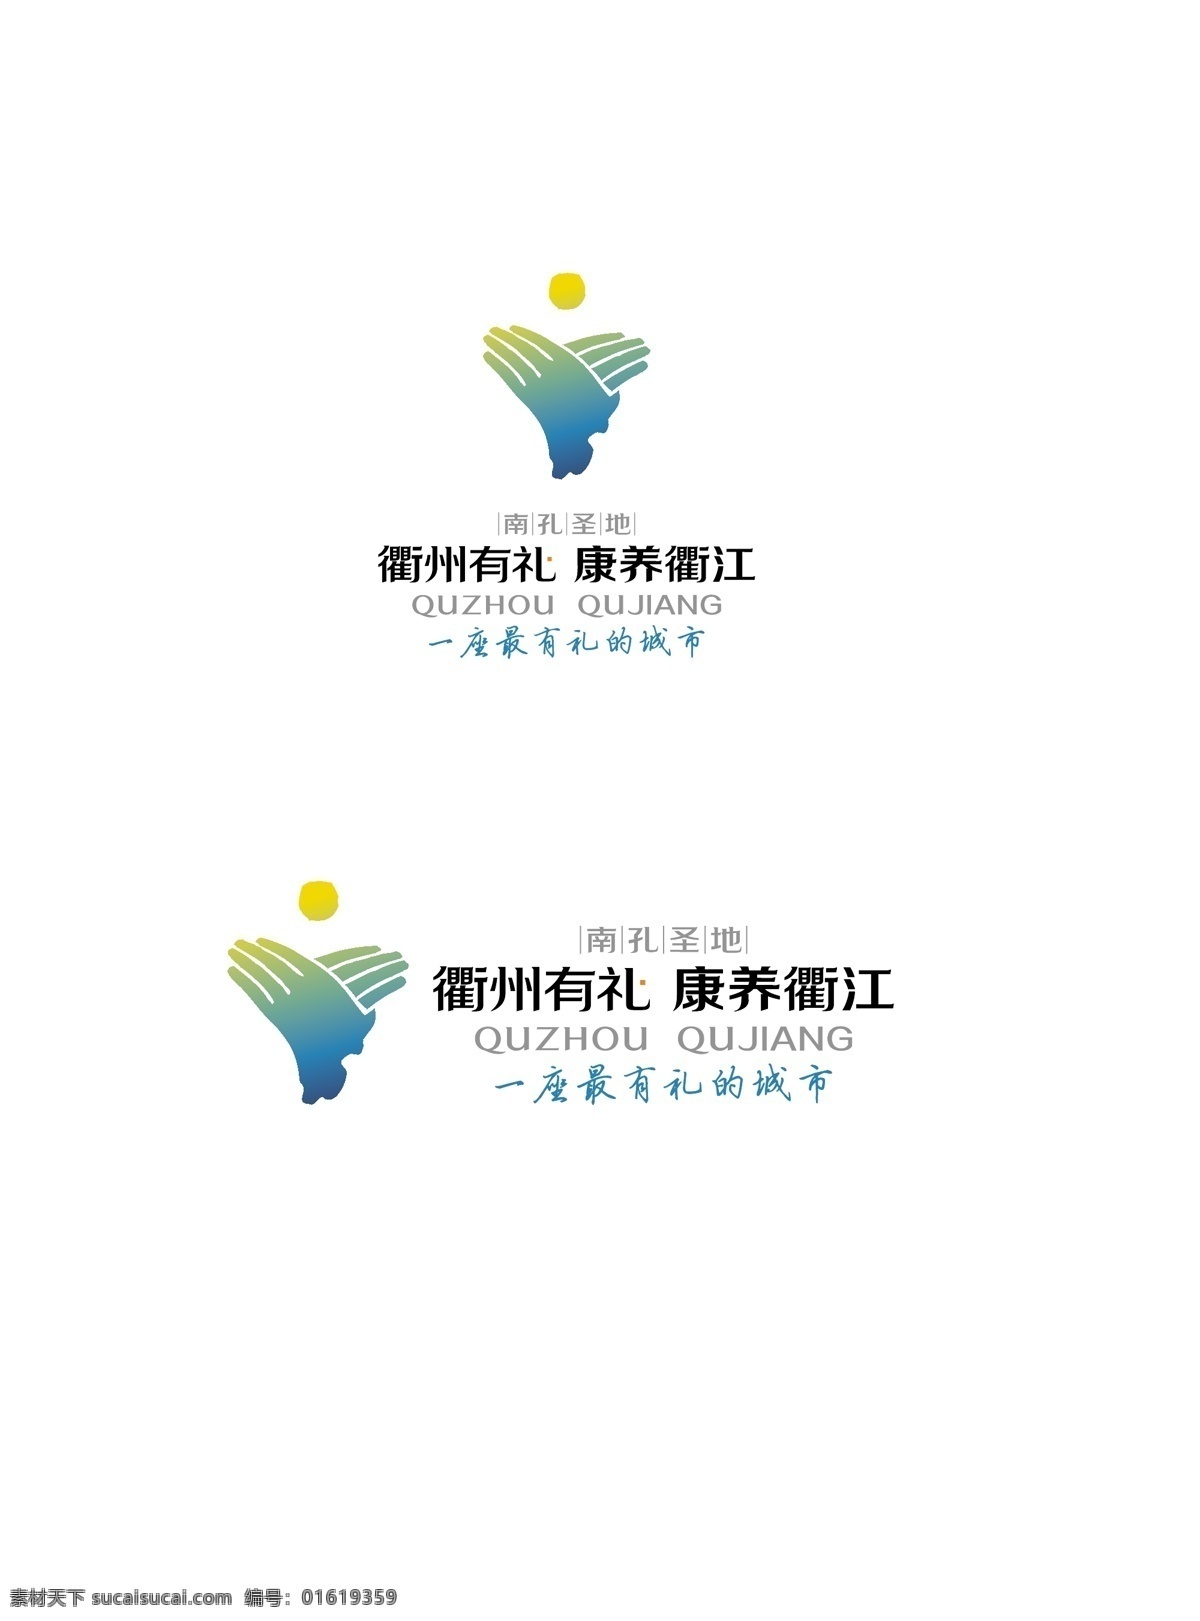 衢州有礼 康养衢江 衢州 衢州logo 衢江logo 标志图标 公共标识标志